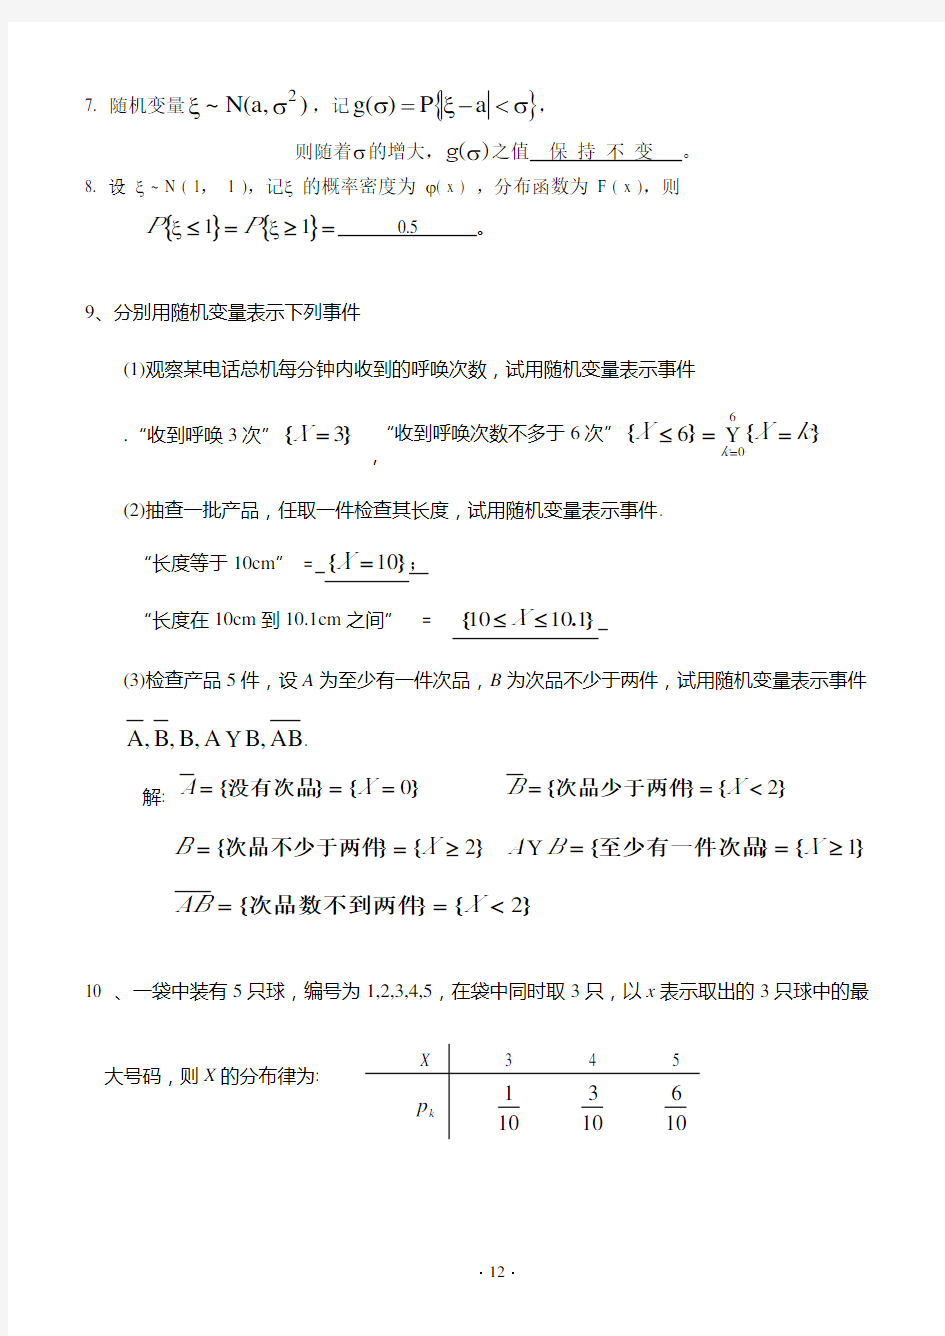 天津理工大学概率论与数理统计第二章习题答案详解